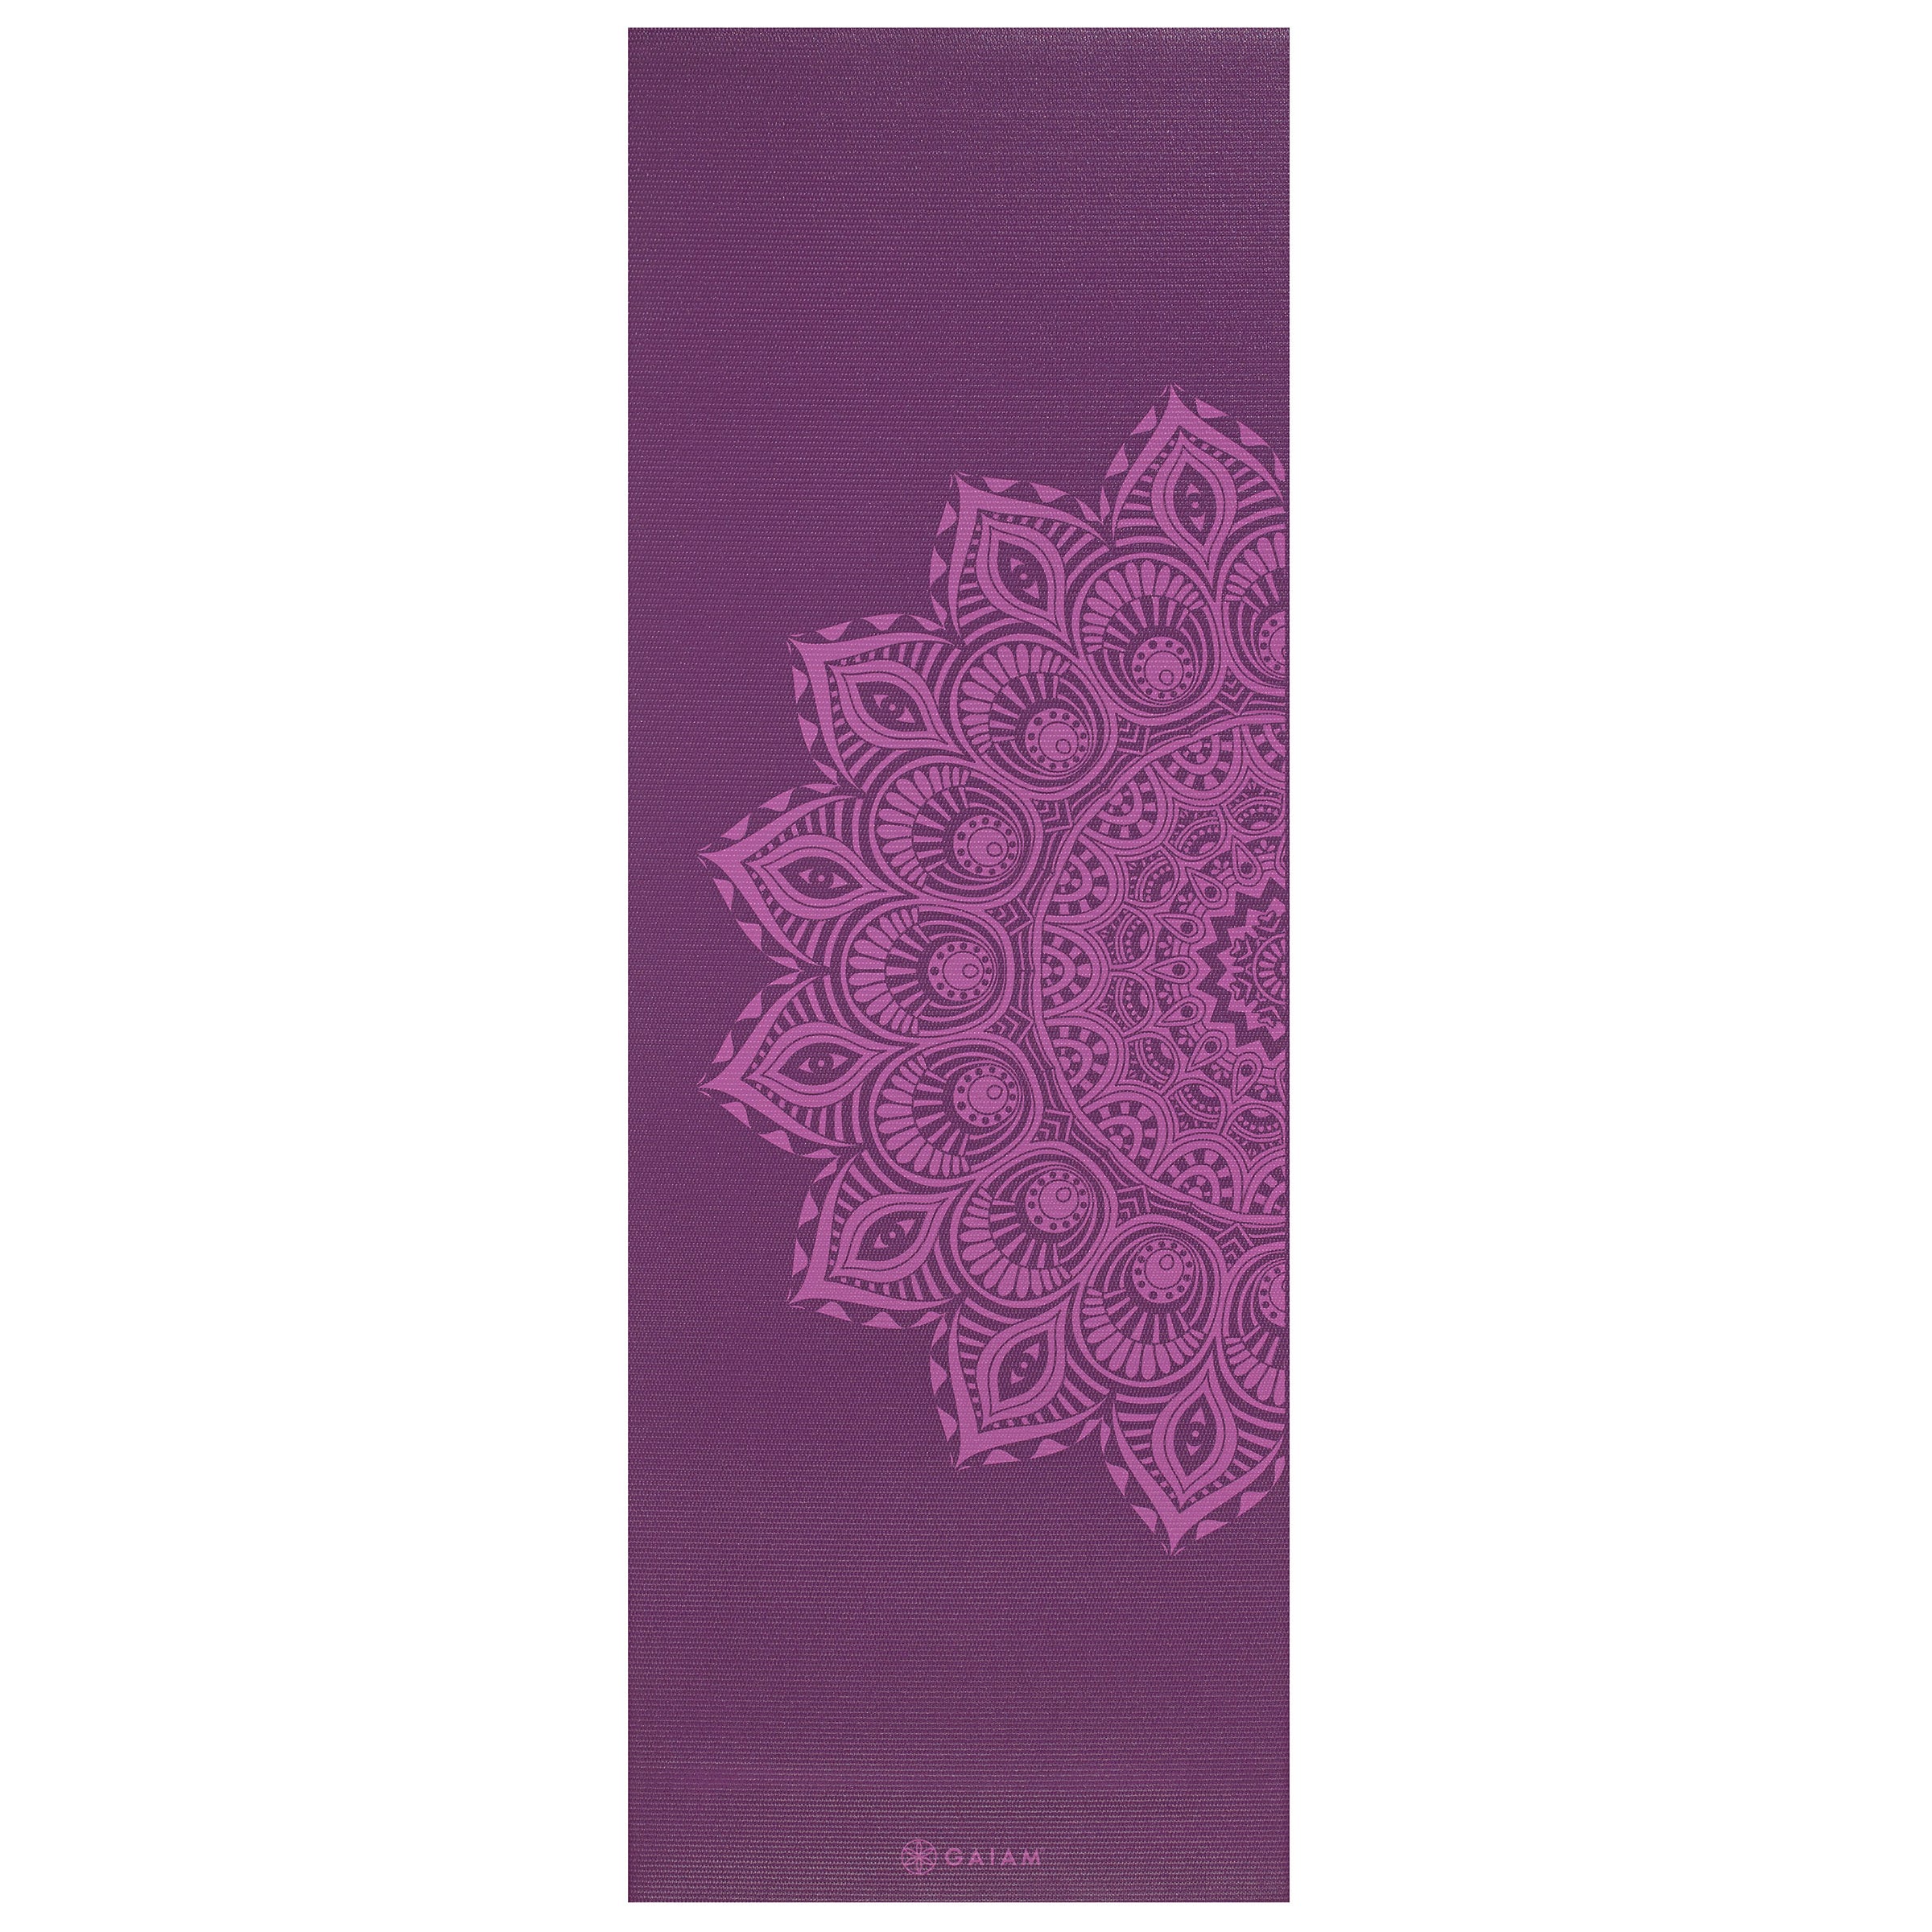 Gaiam Premium Print Yoga Mat 5mm Purple Mandala